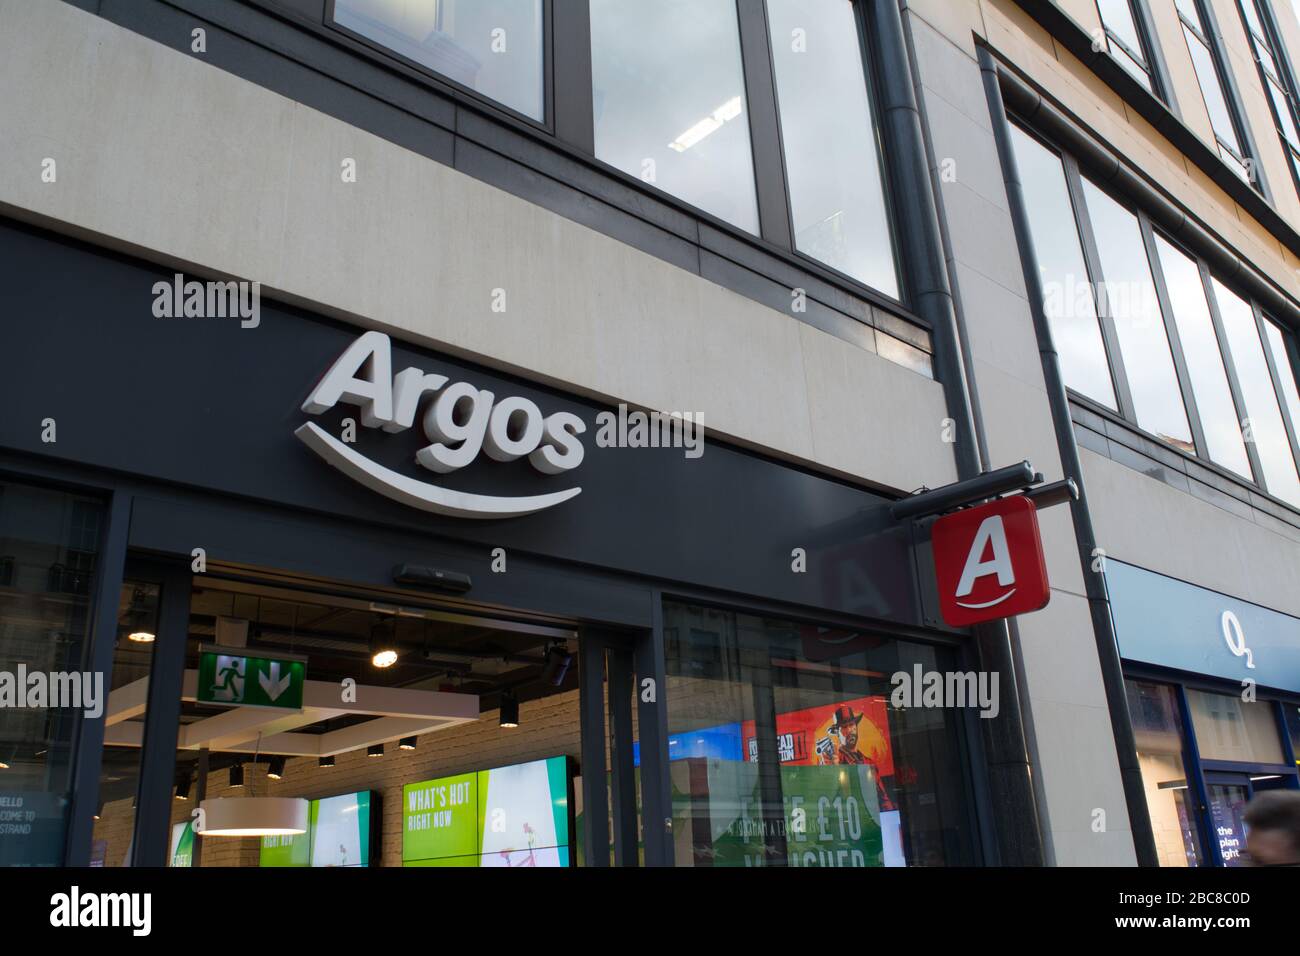 Tienda Argos, gran minorista británico de la calle alta - logotipo exterior / señalización - Londres Foto de stock